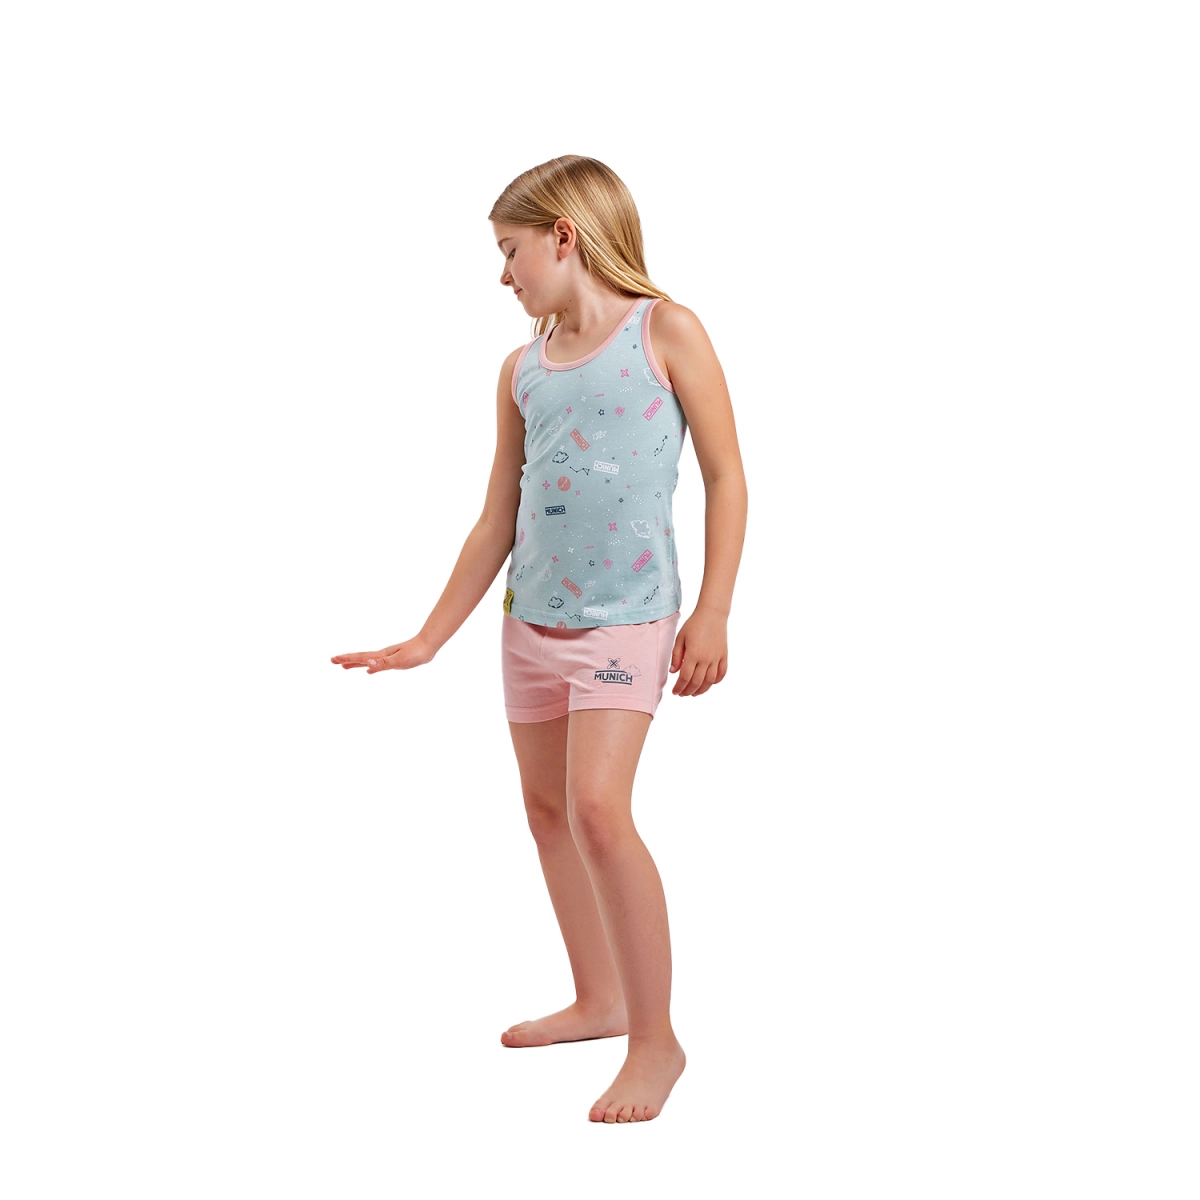 Pijama de tirantes y cuello redondo Munich DH1200 niña Talla: 16 AÑOS Color: Multicolor DH1200.16 AÑOS